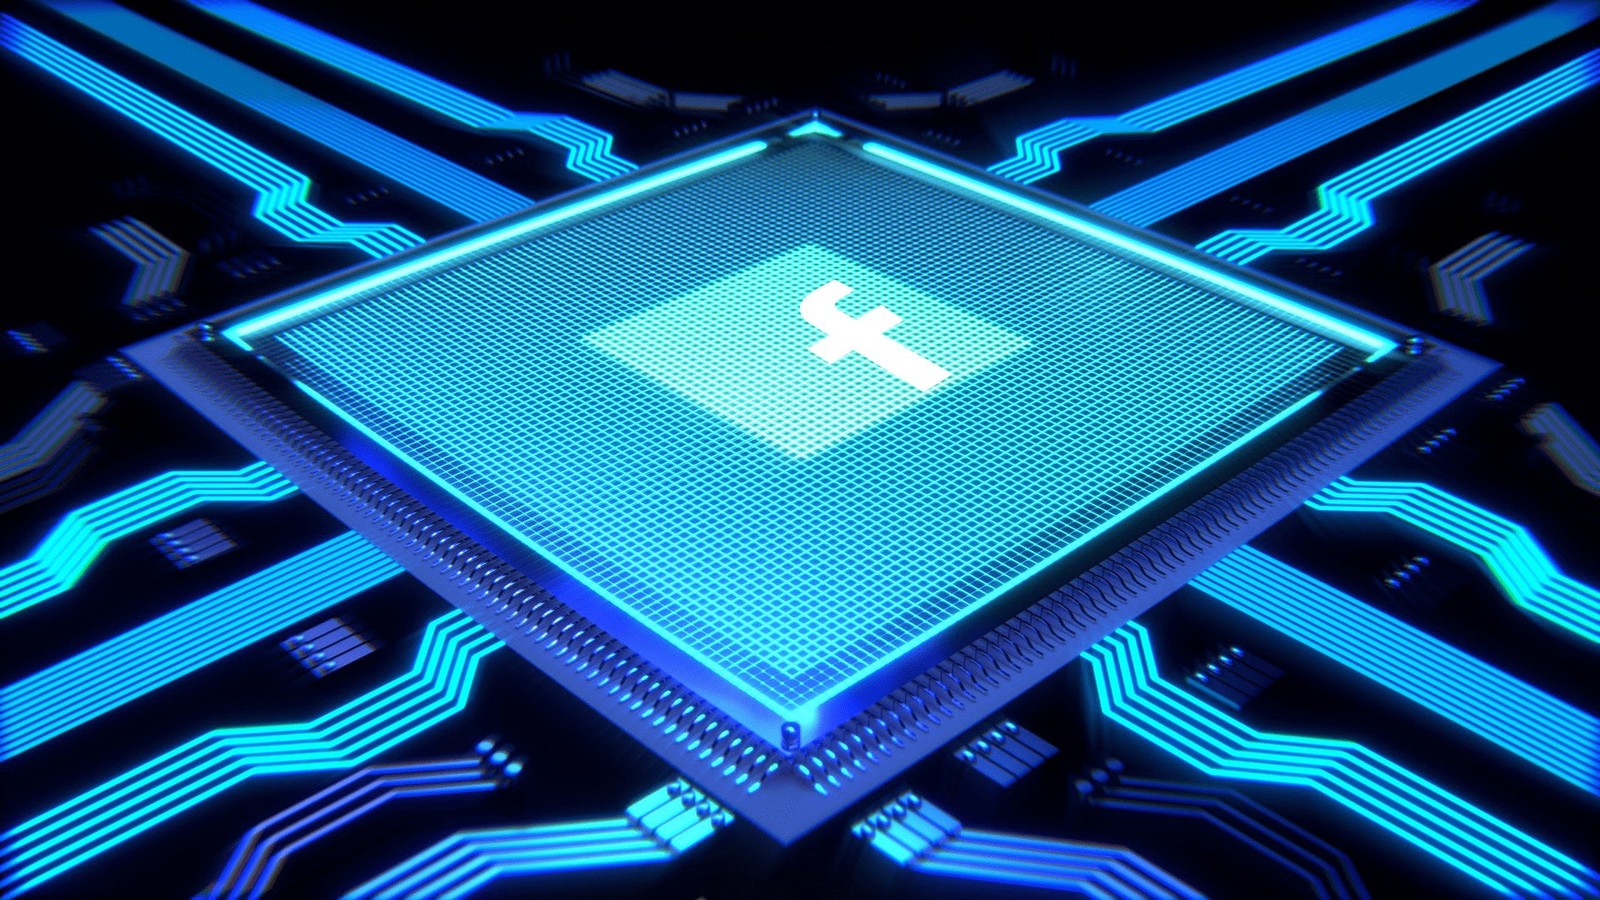 Shahriar Rabii wiceprezesem Facebooka odpowiedzialnym za produkcję procesorów